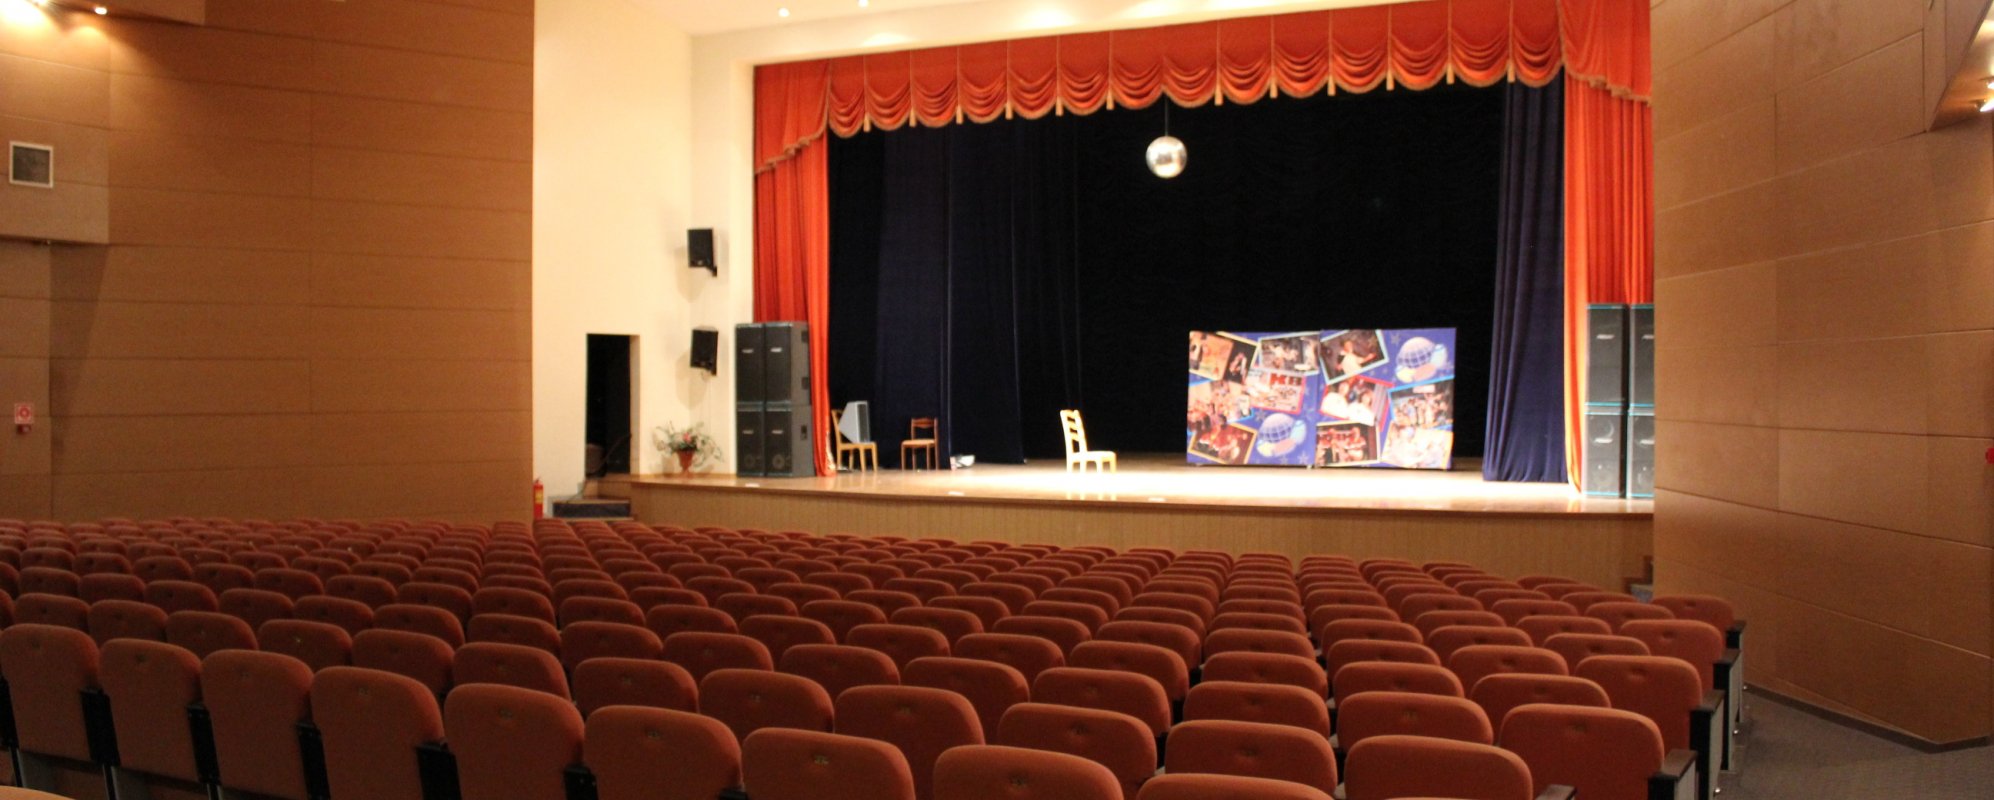 Фотографии концертного зала Концертный зал ДК Царицын